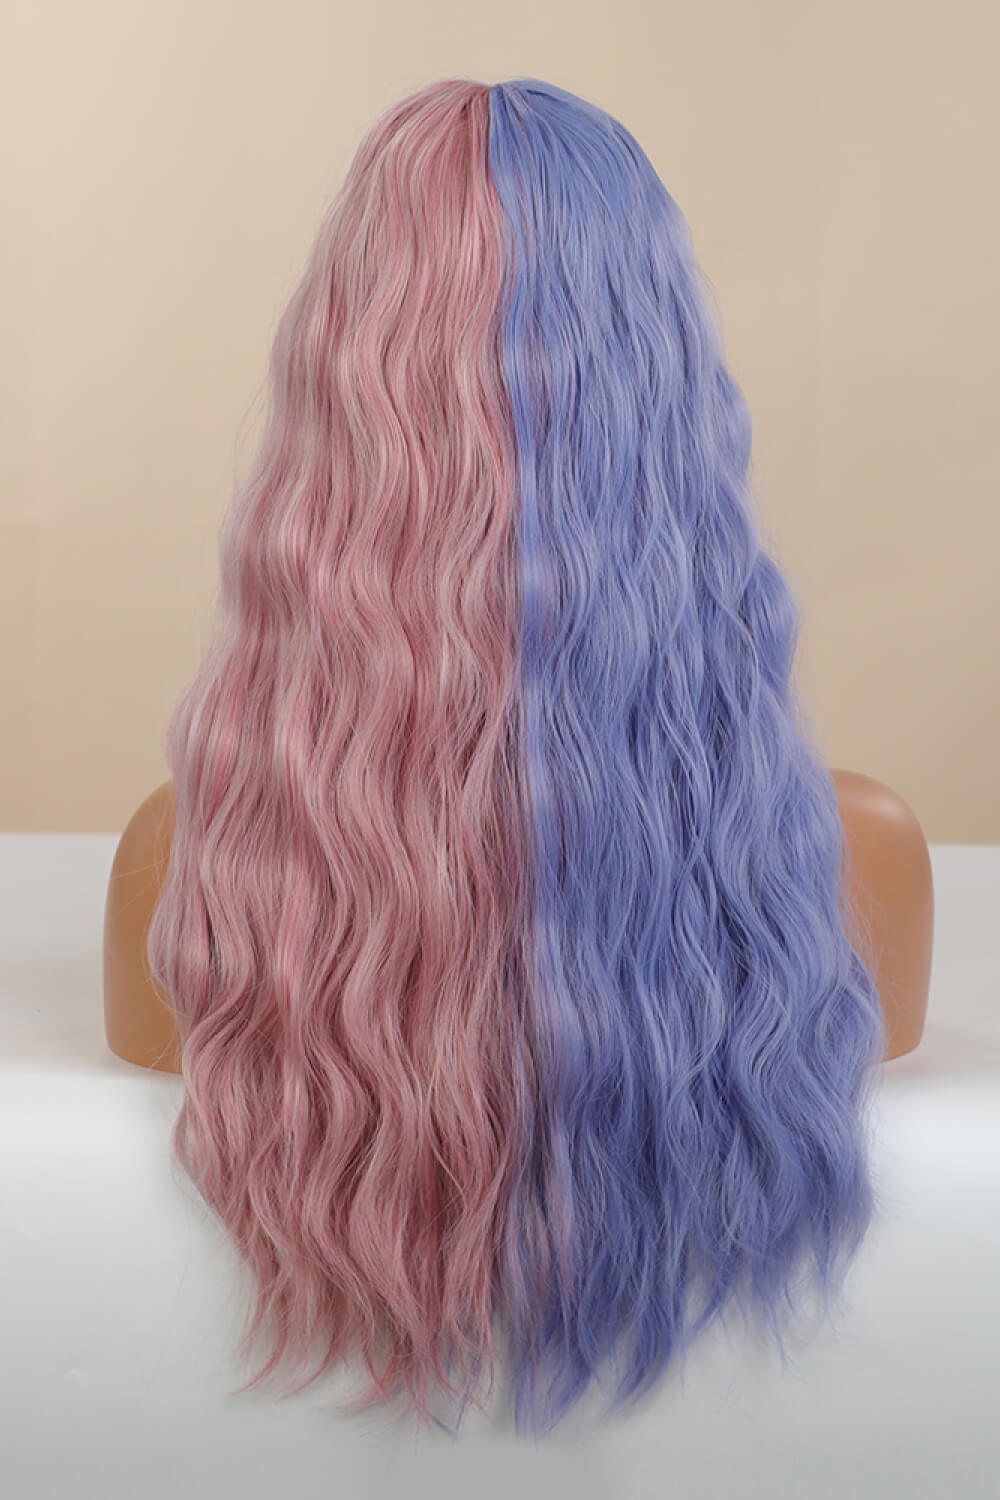 26" Synthetic Long Wave in Blue/Pink Split Dye